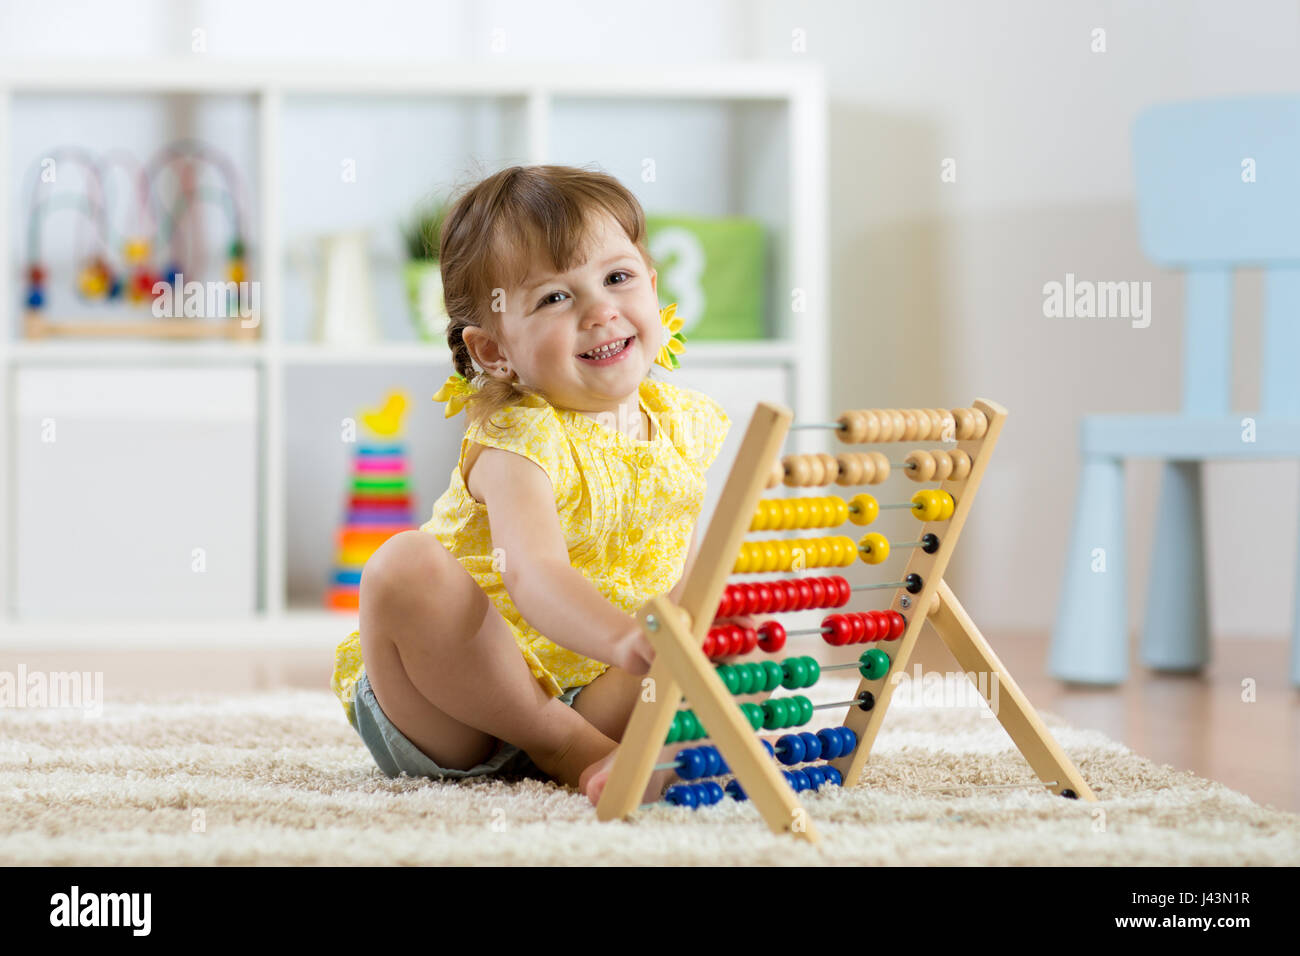 Capretto sorridente ragazza che gioca con il giocattolo del contatore Foto Stock